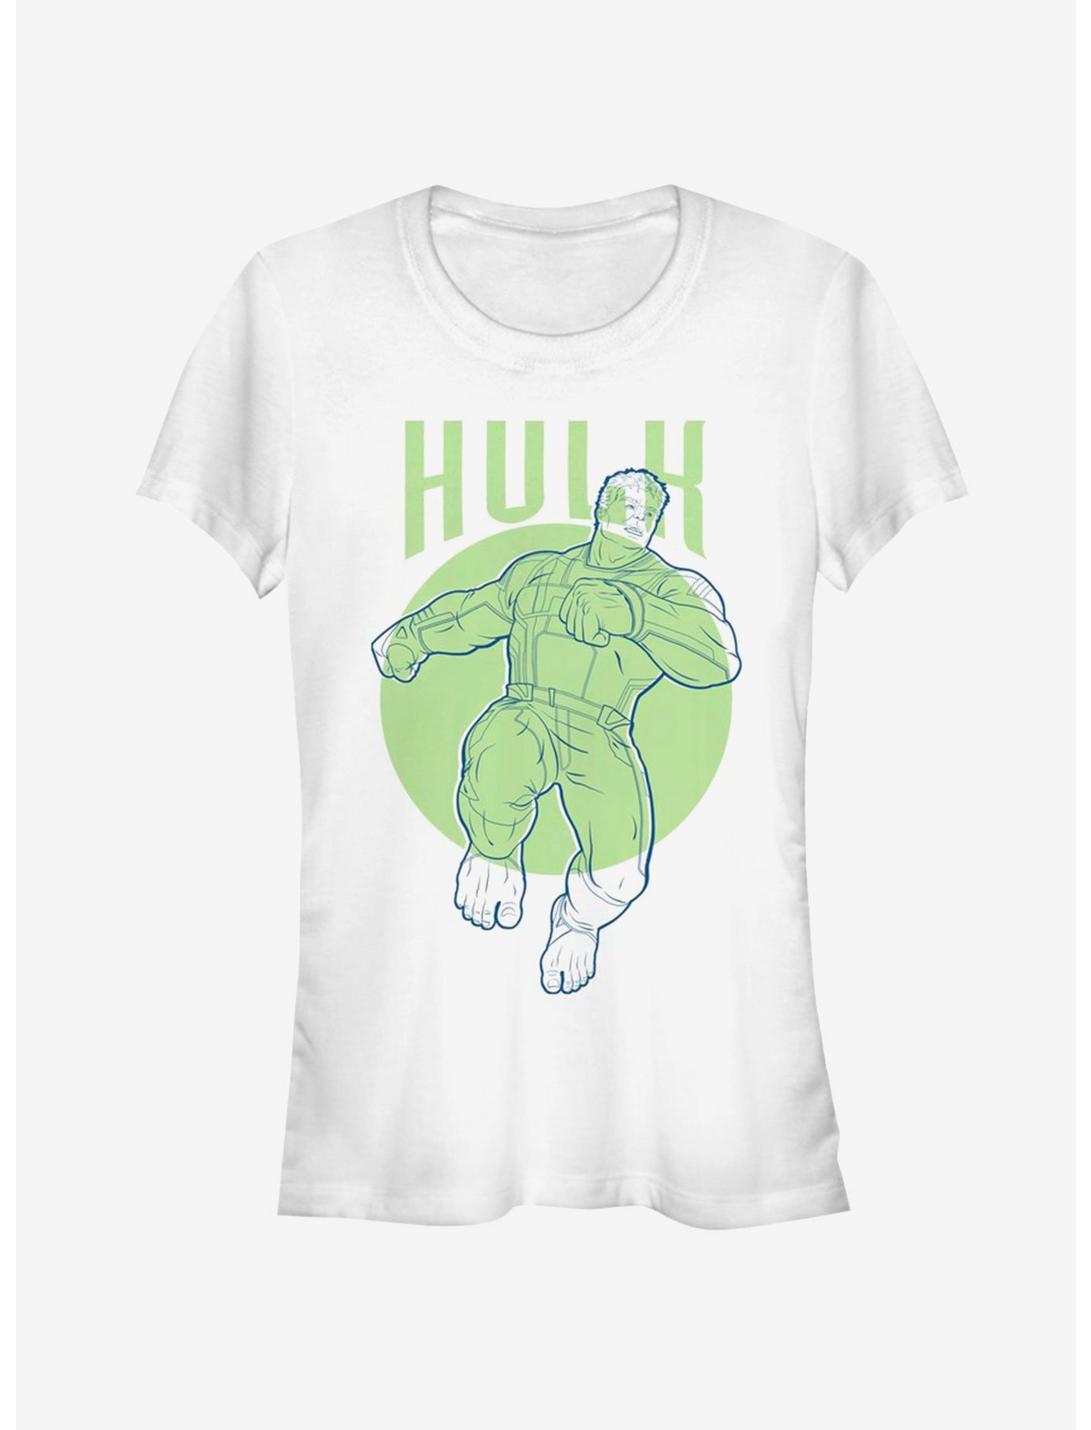 Marvel Avengers Endgame Hulk Simplicity Girls T-Shirt, WHITE, hi-res